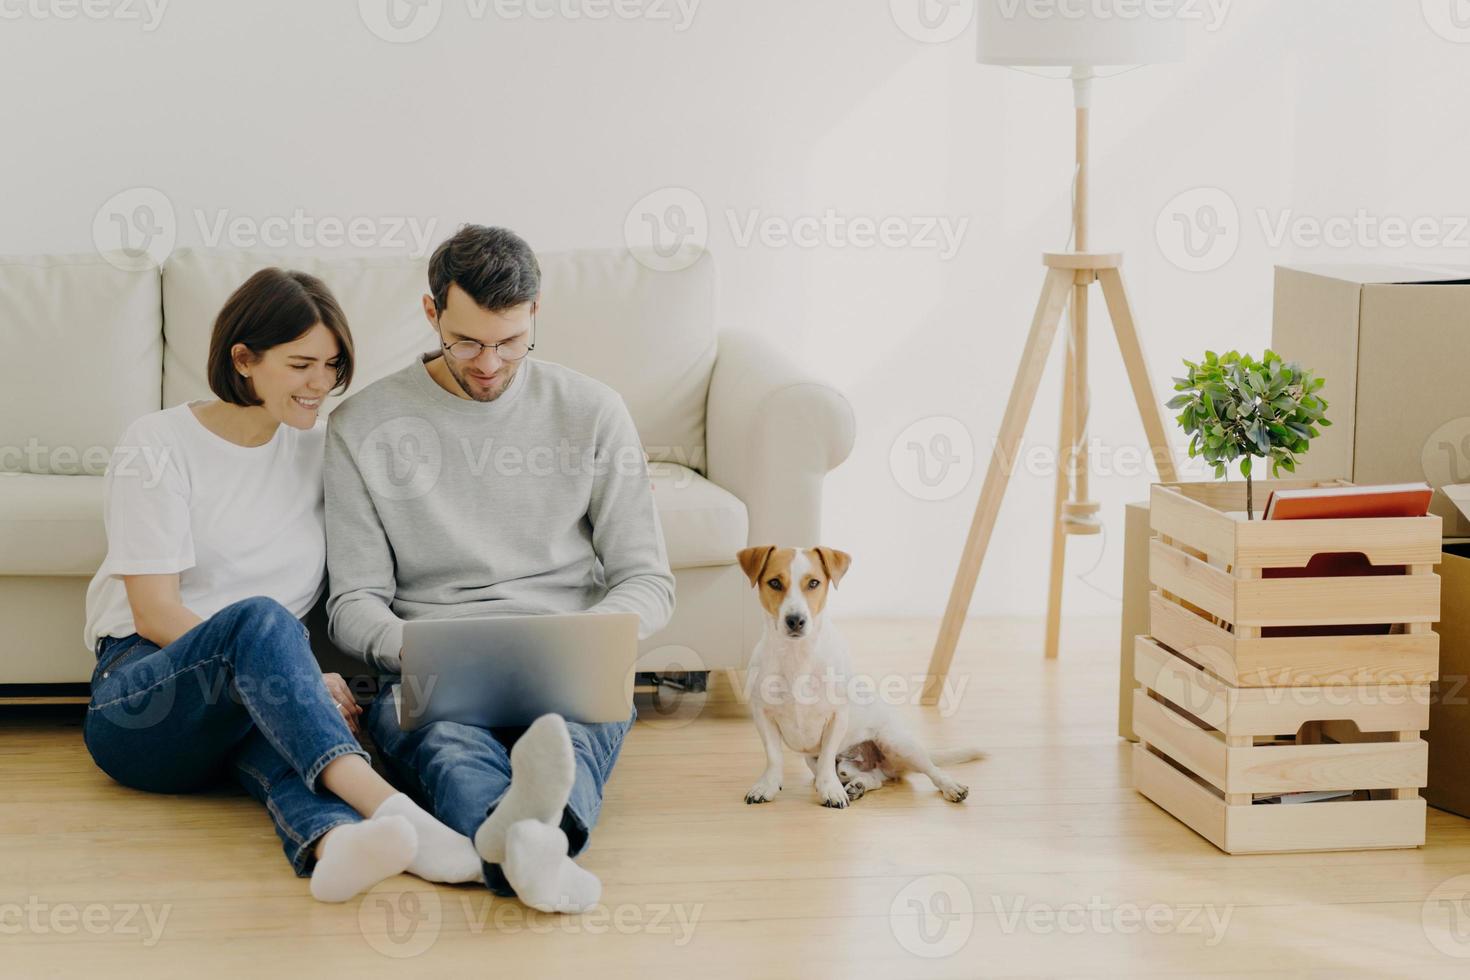 giovane coppia di famiglie europee si rilassa durante la ristrutturazione della casa, si concentra sul computer portatile, pianifica la ristrutturazione, si siede vicino al divano con il cane di razza preferito, scatole con oggetti personali e lampada da terra foto